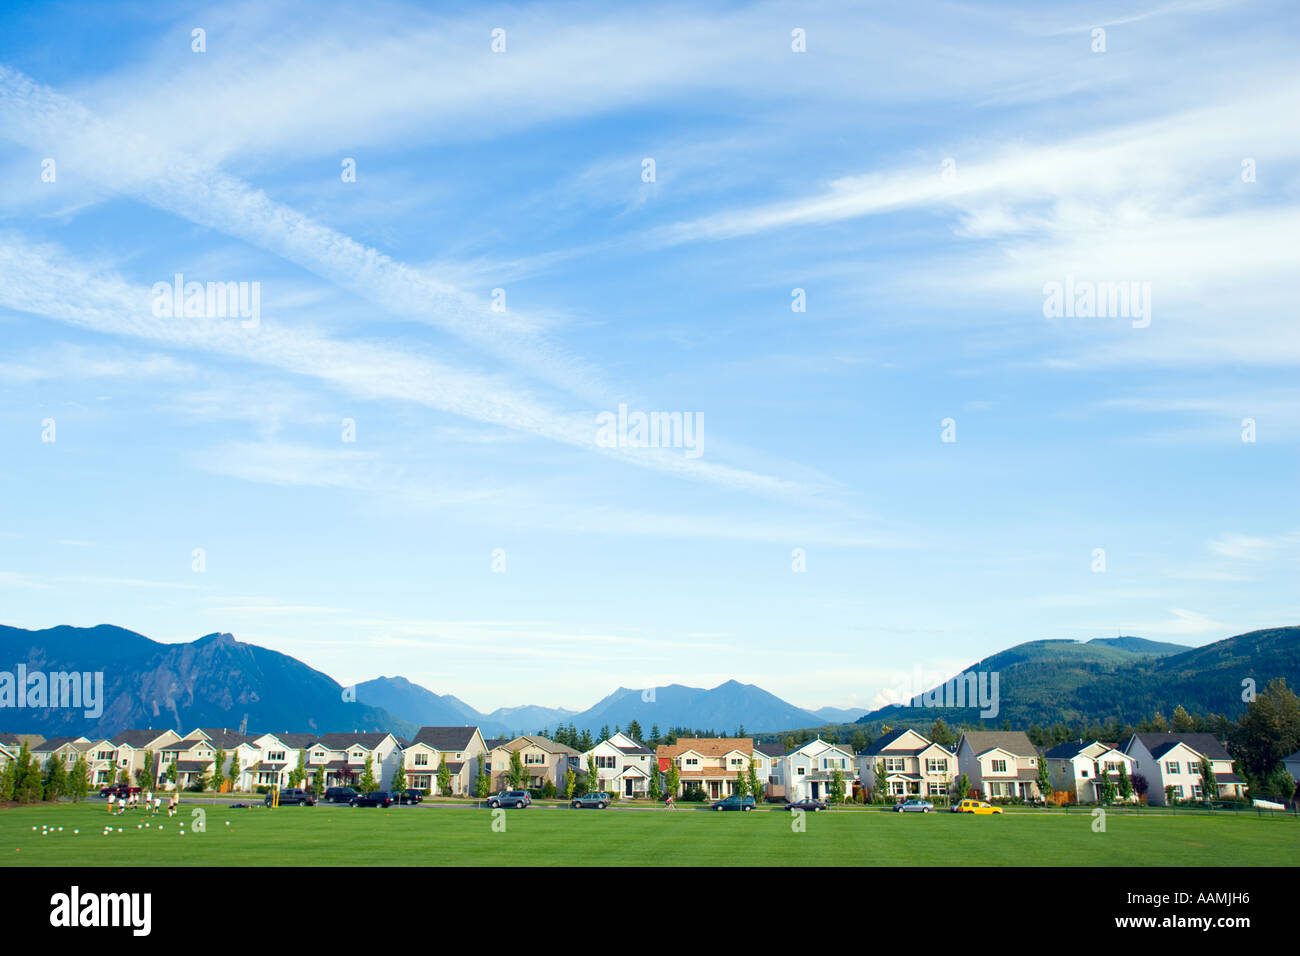 Row of suburban houses near mountain range Stock Photo